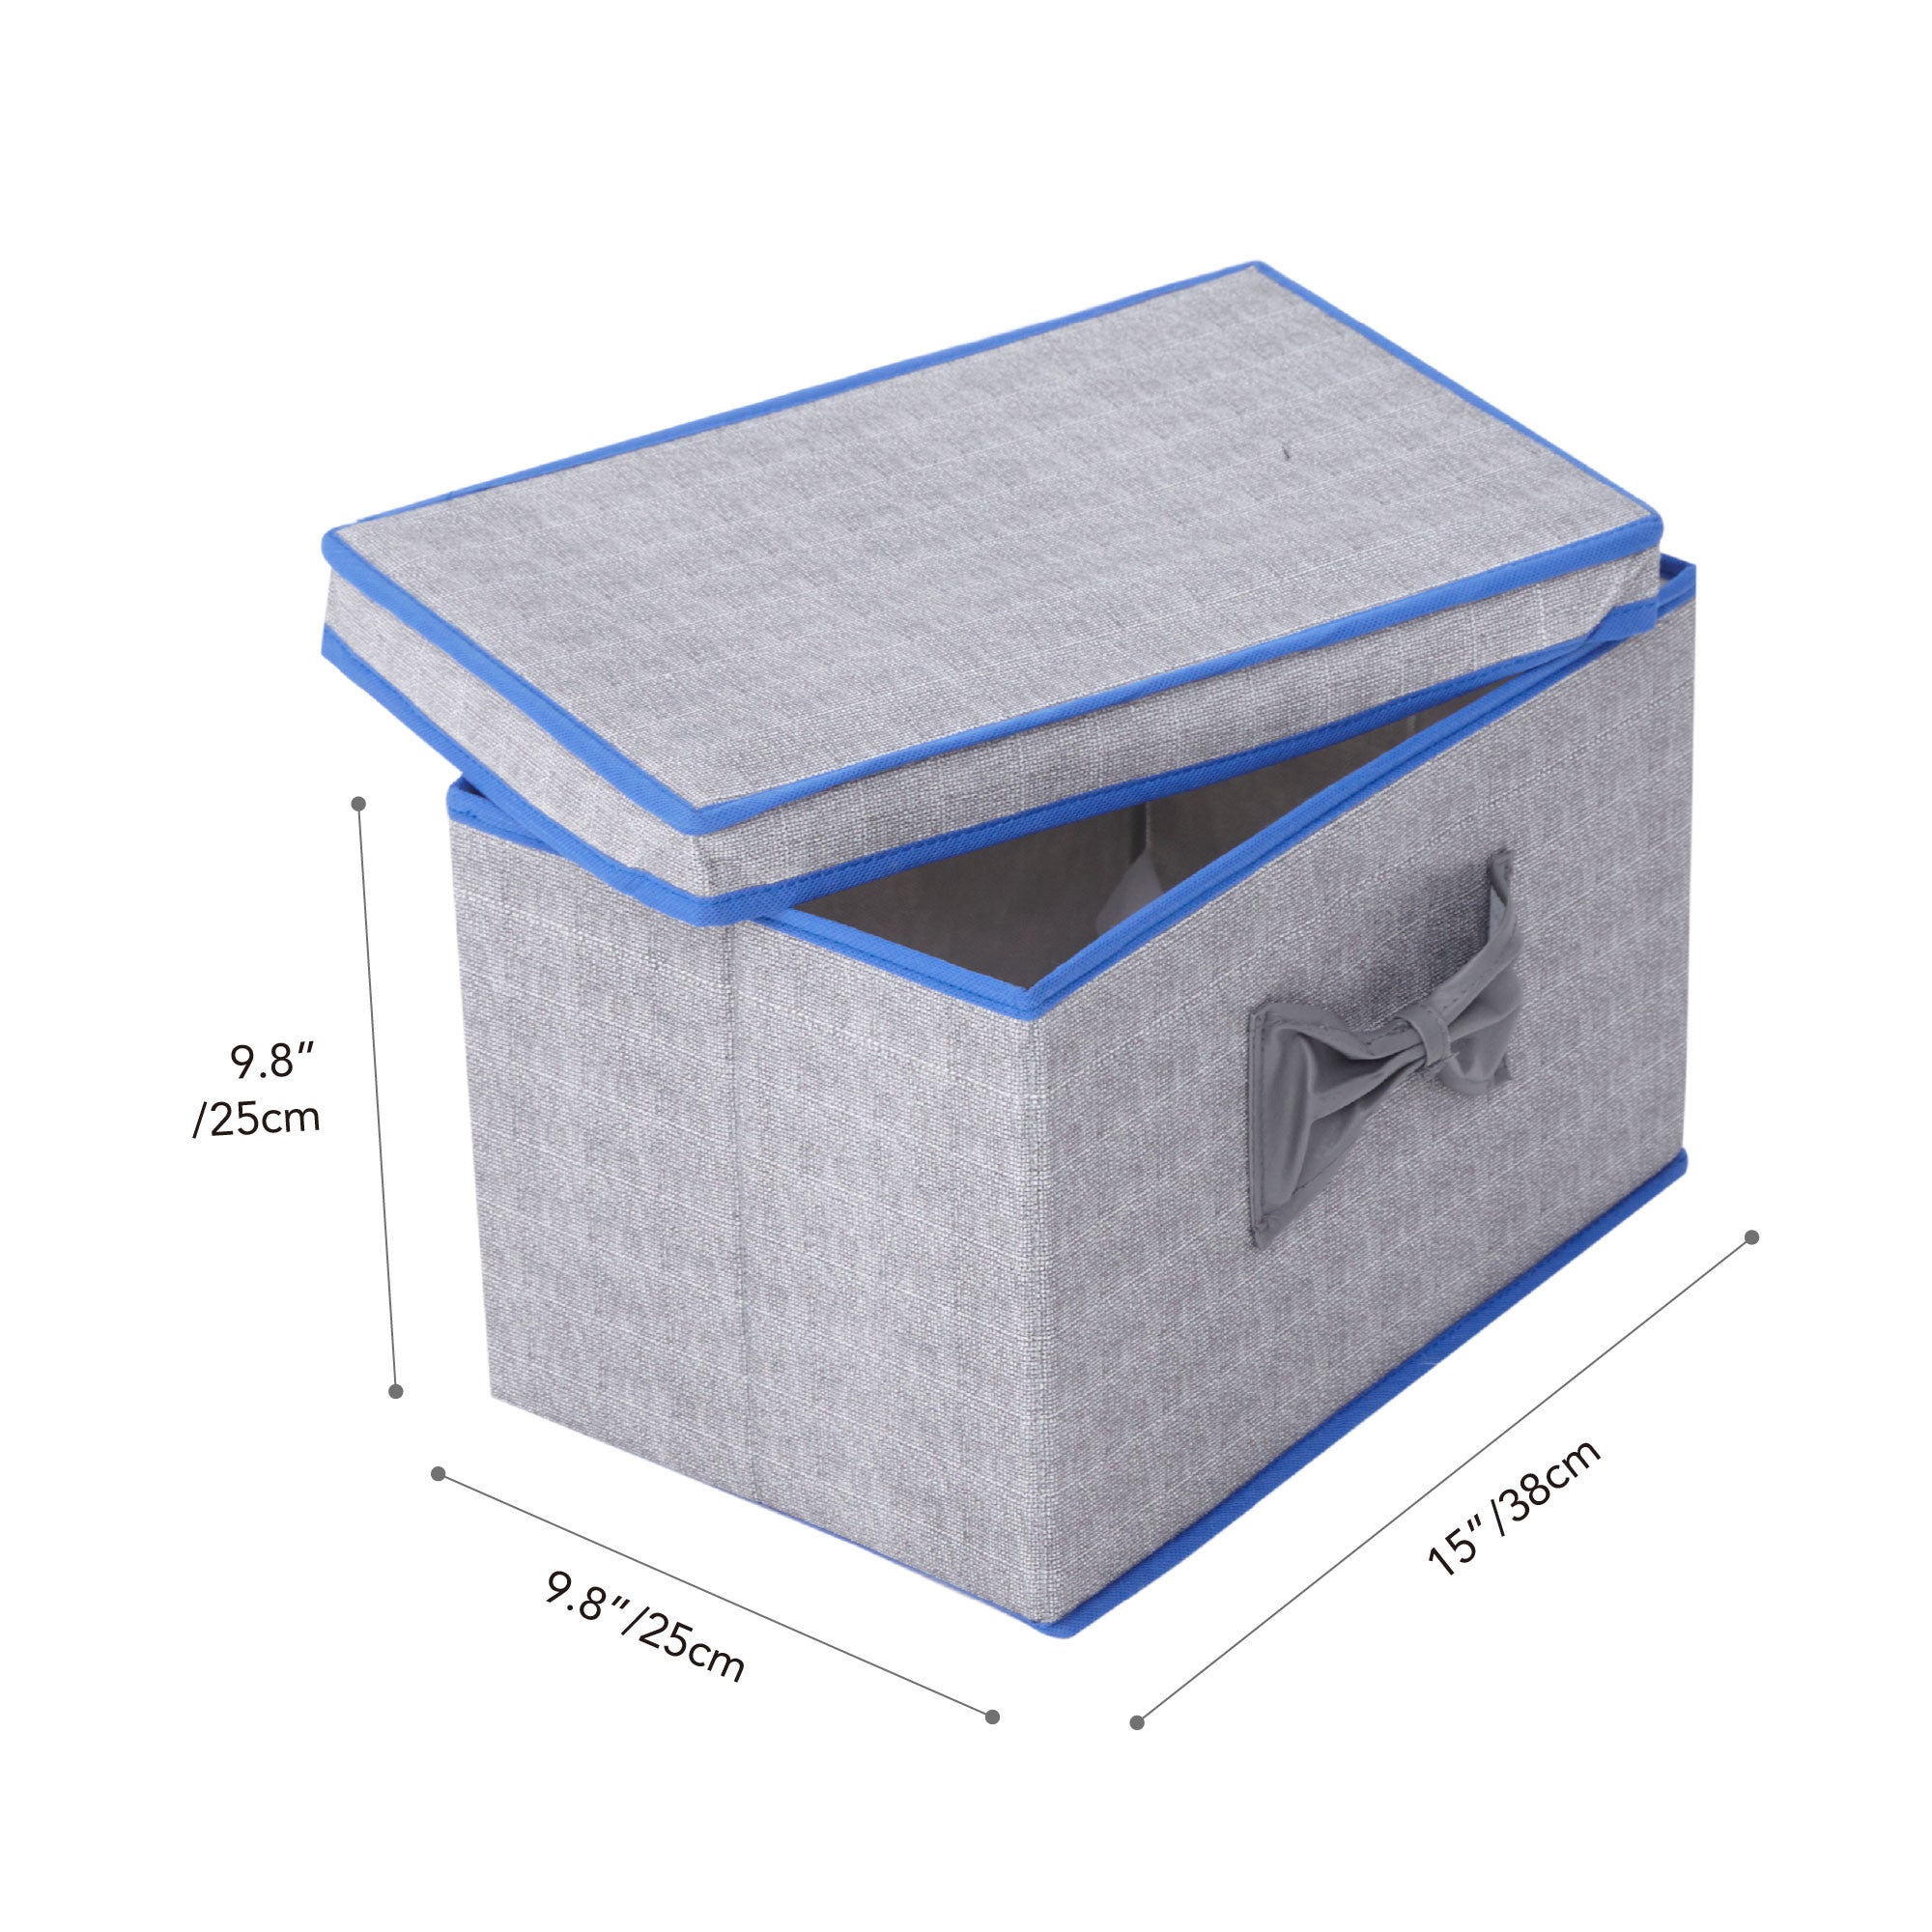 2 Piece Box Soft Storage Set with Lid